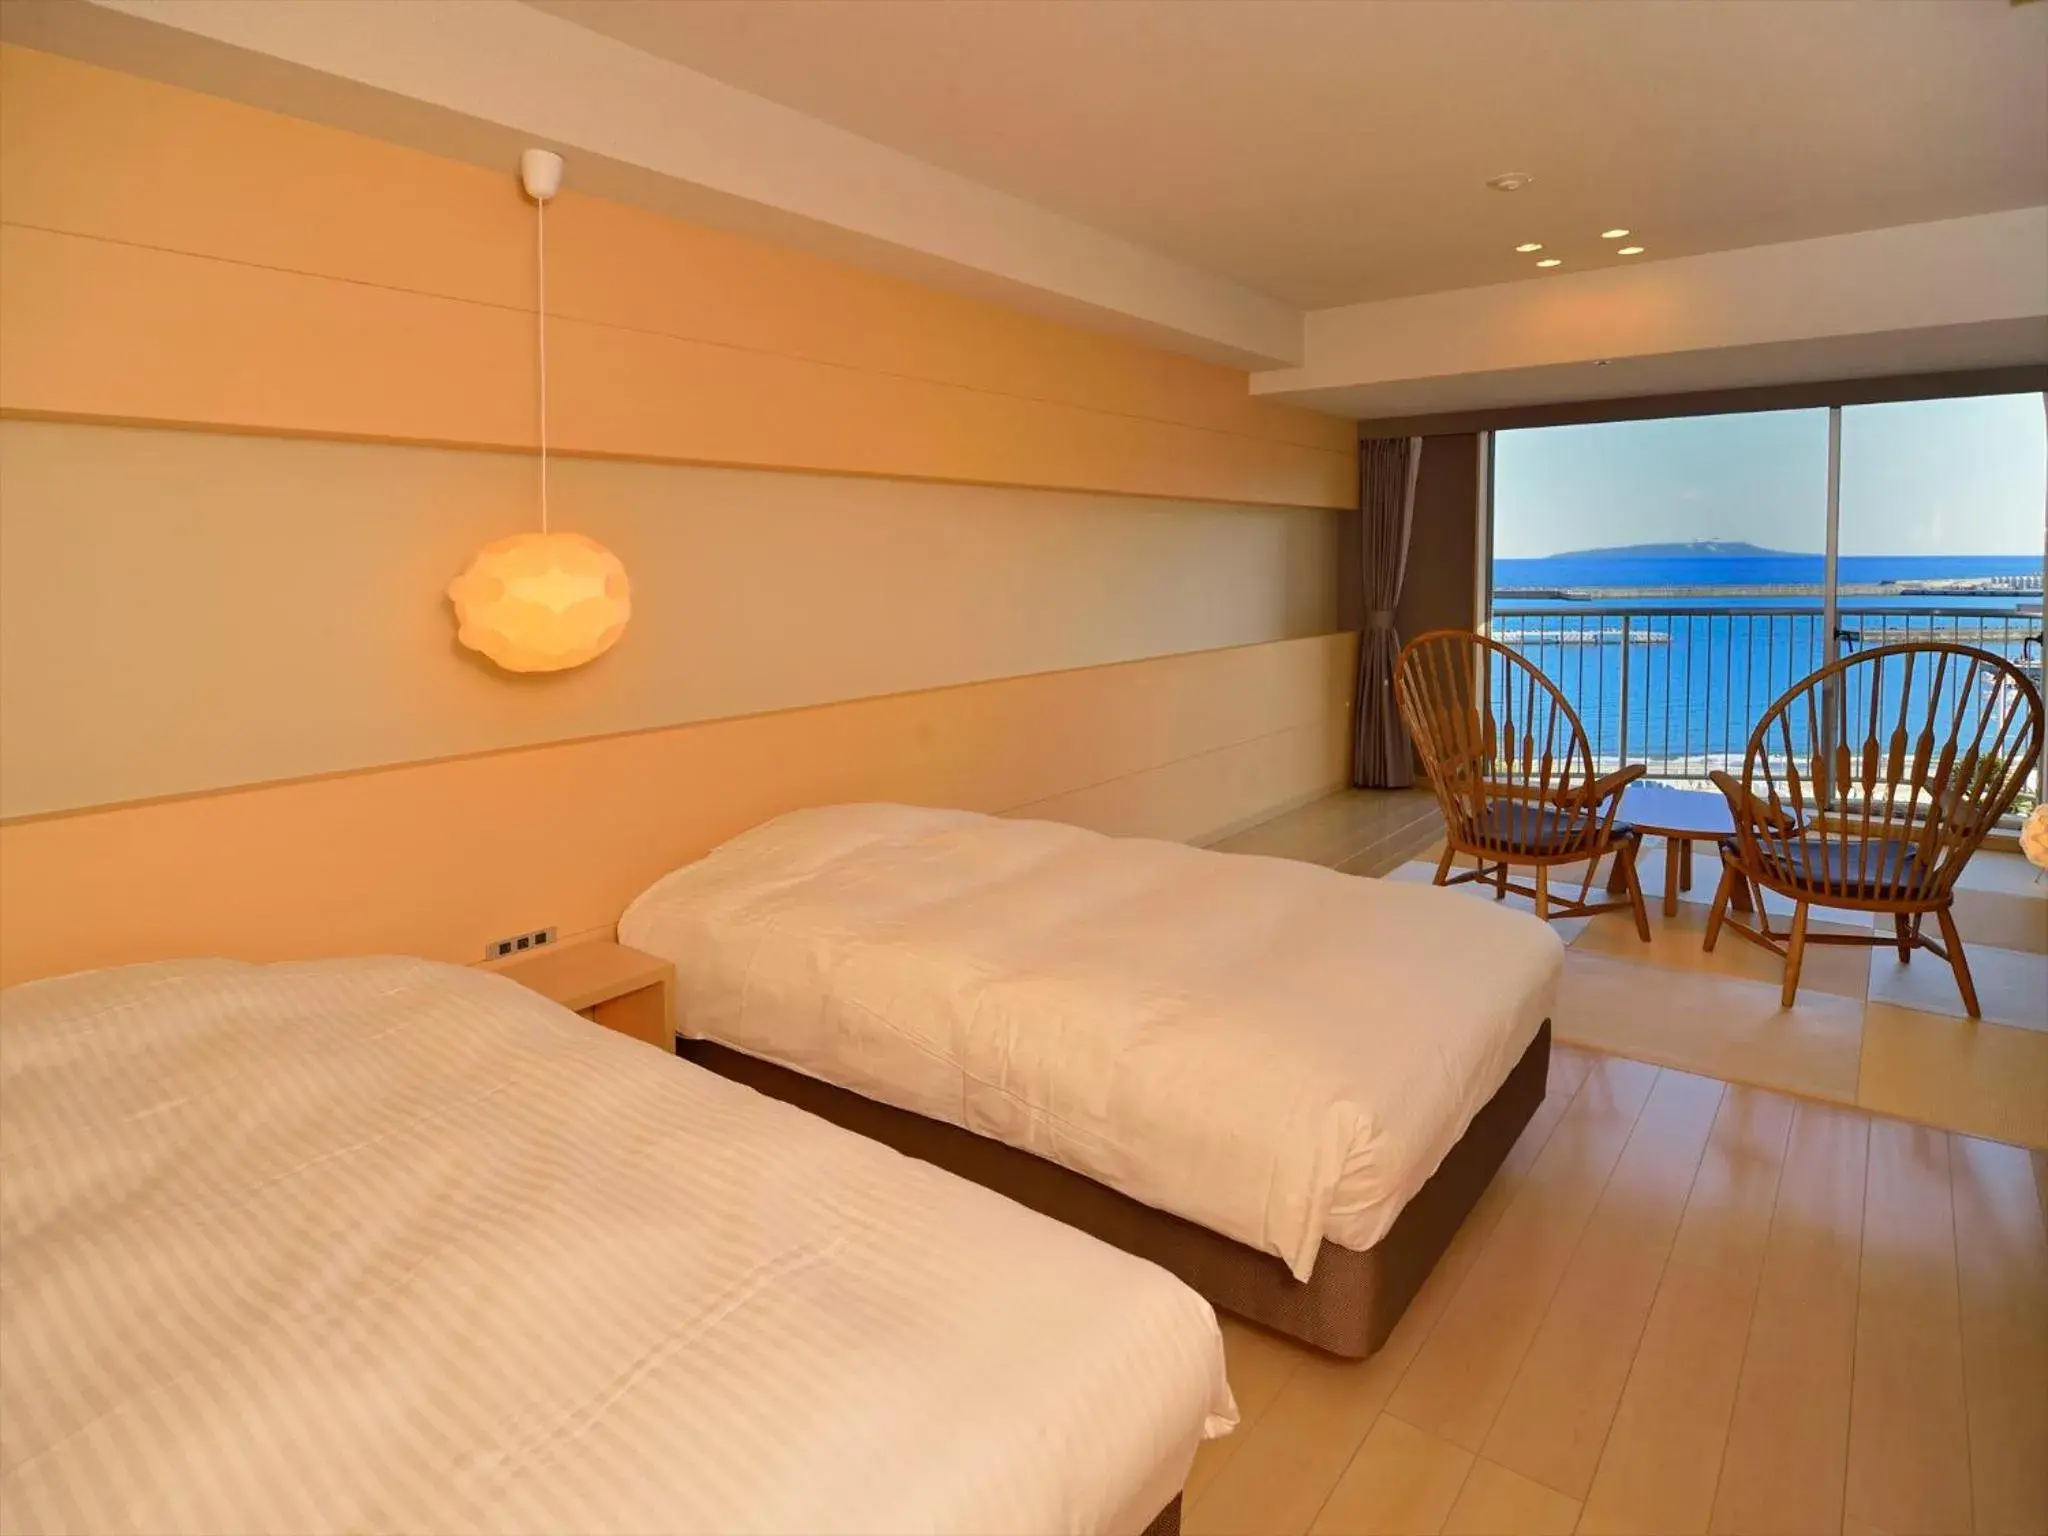 Day, Room Photo in Atami Seaside Spa & Resort